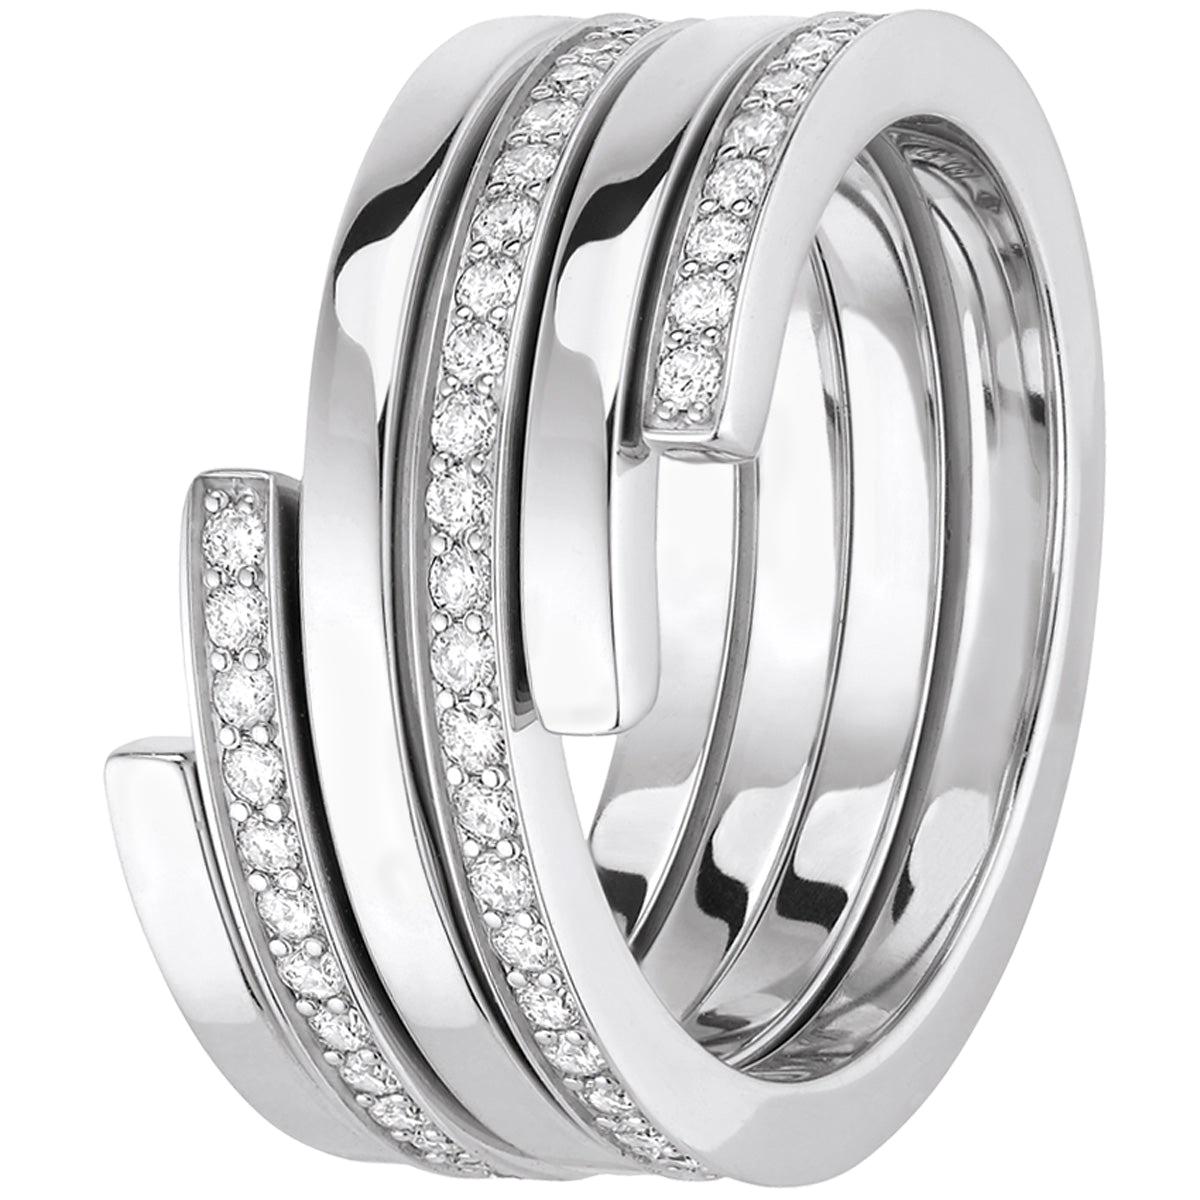 Dinh Van Spiral Rings 18 Karat White/Pink Gold & Diamonds, Set of 3 'Price of 2'